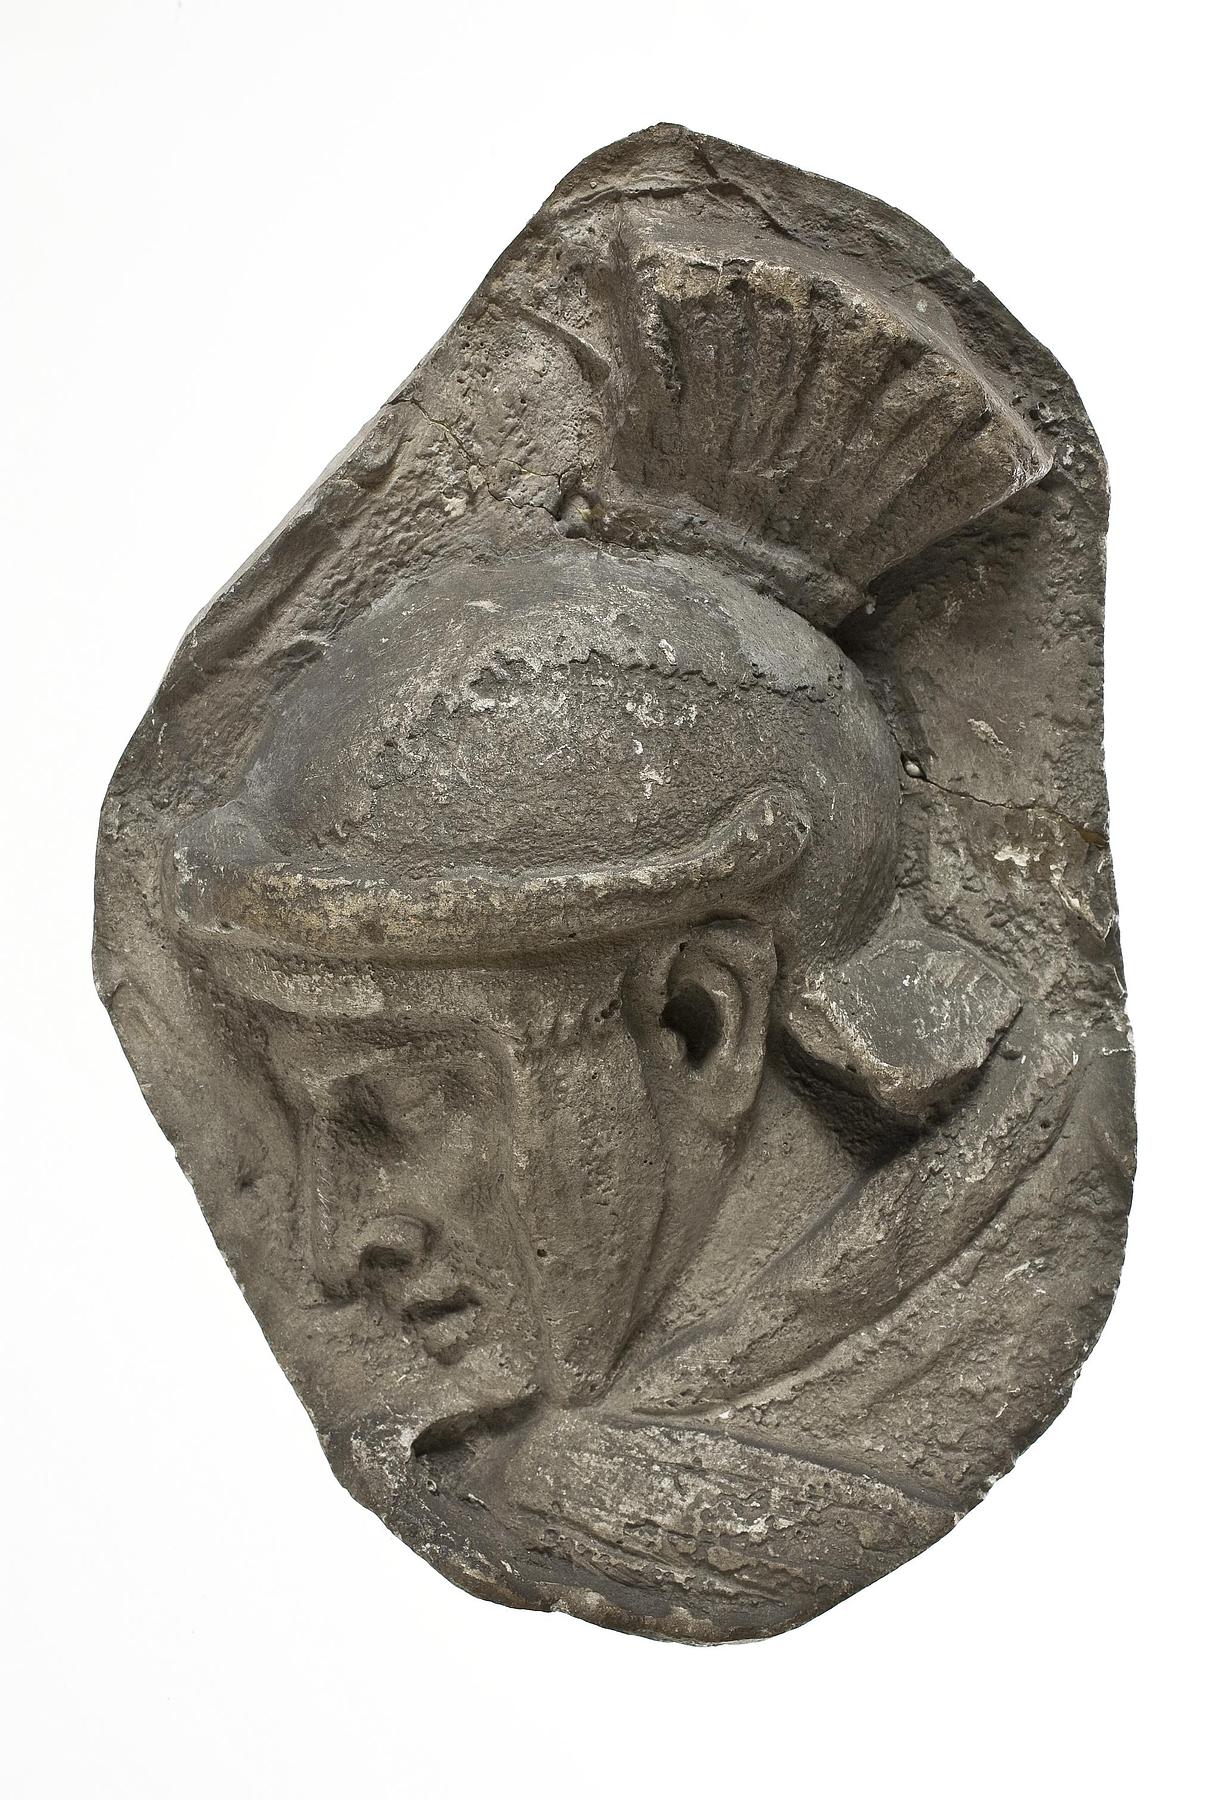 Head of a helmeted legionary, L326dd